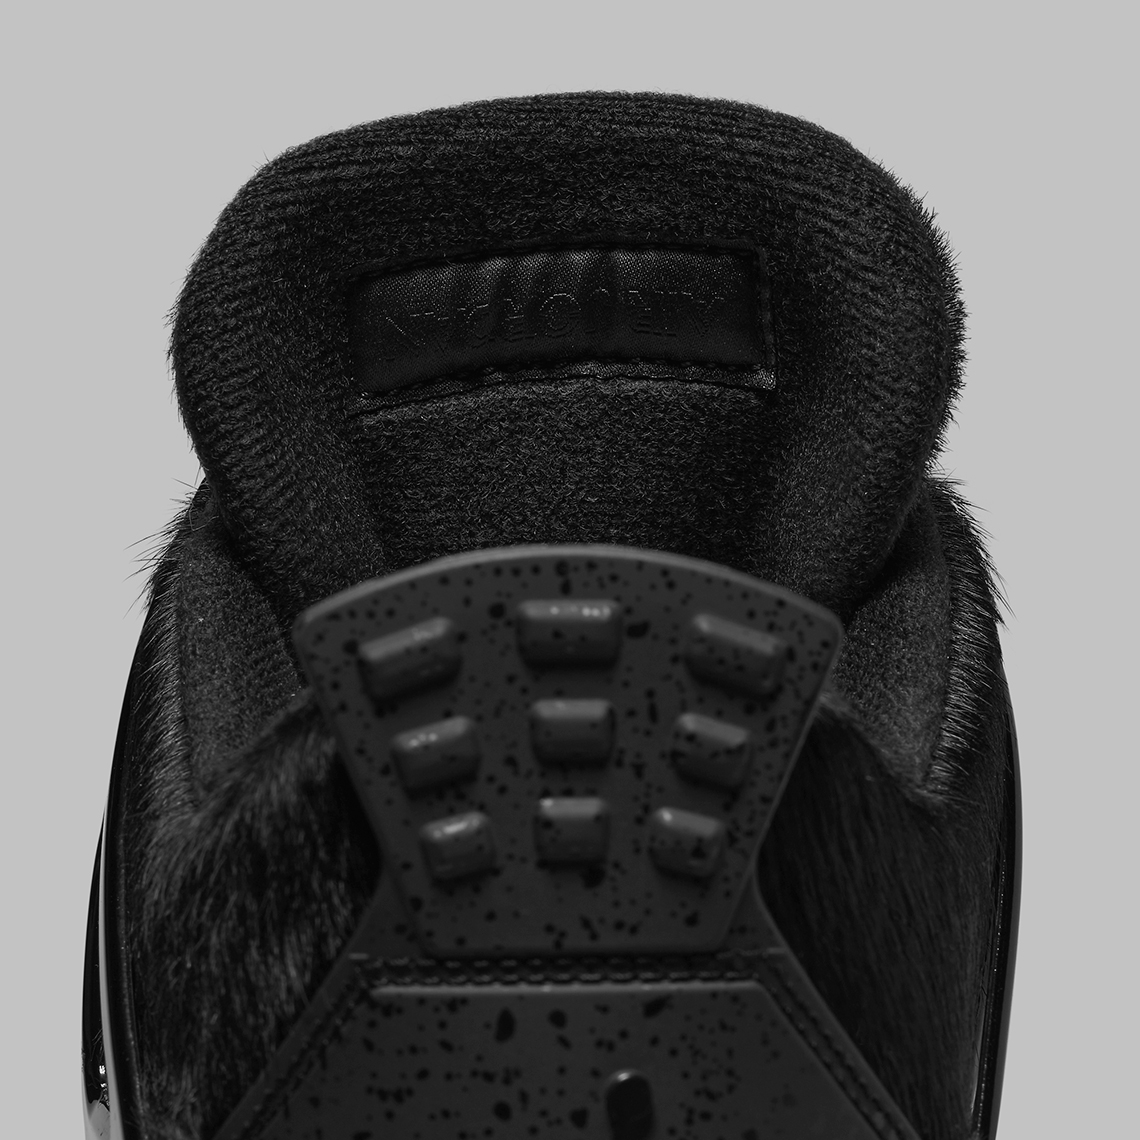 Air Jordan 4 Golf Black Cat Cu9981 001 Release Date 9